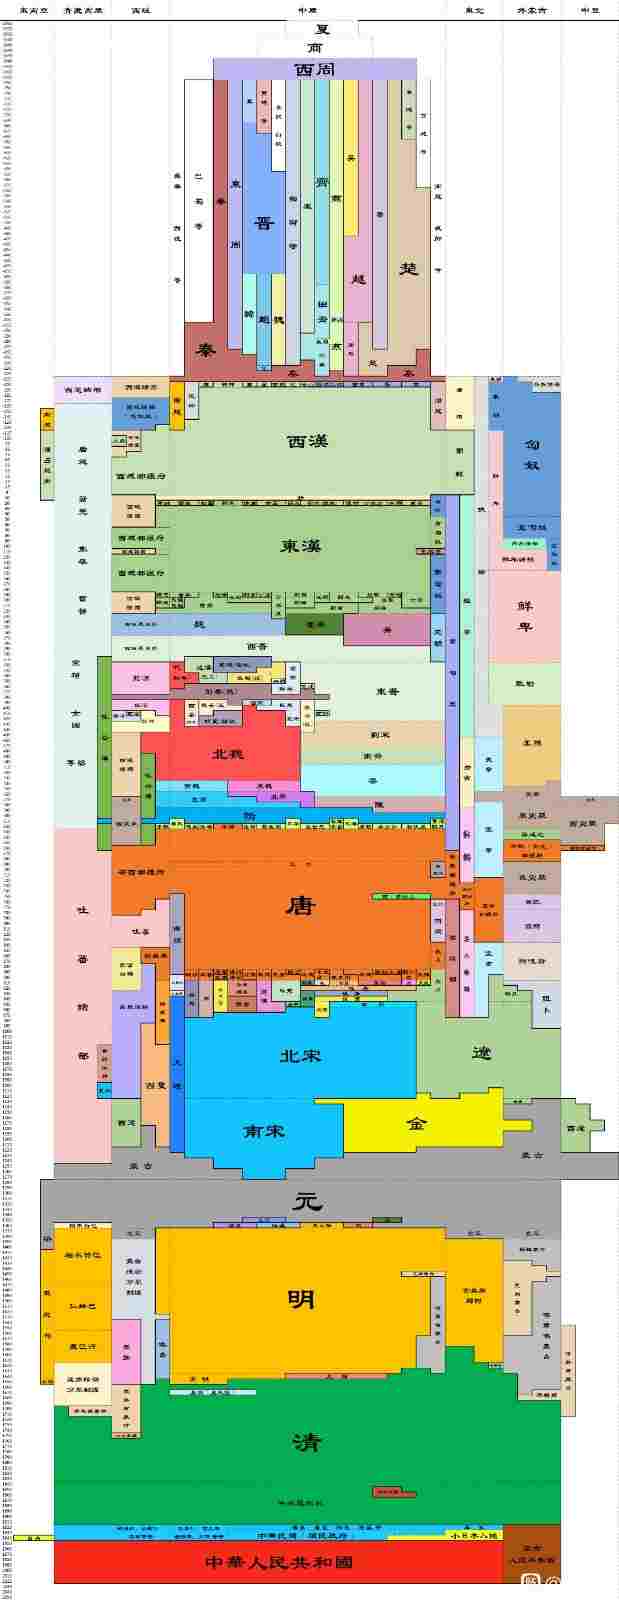 中国历史朝代跨度表高清图Excel表格版下载截图1